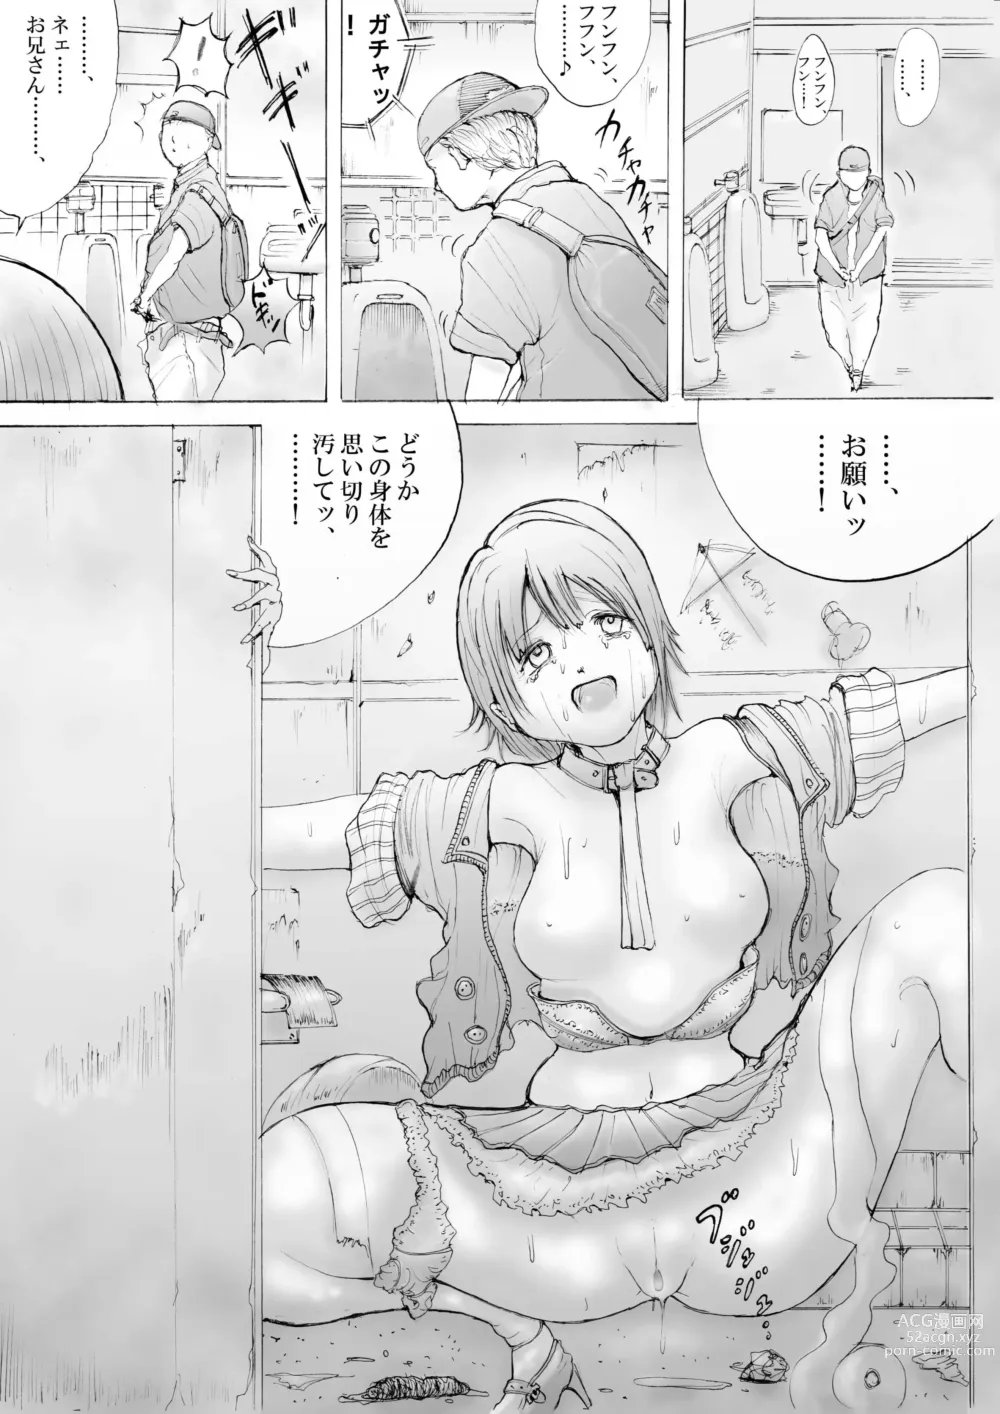 Page 6 of doujinshi Horror Manga 10